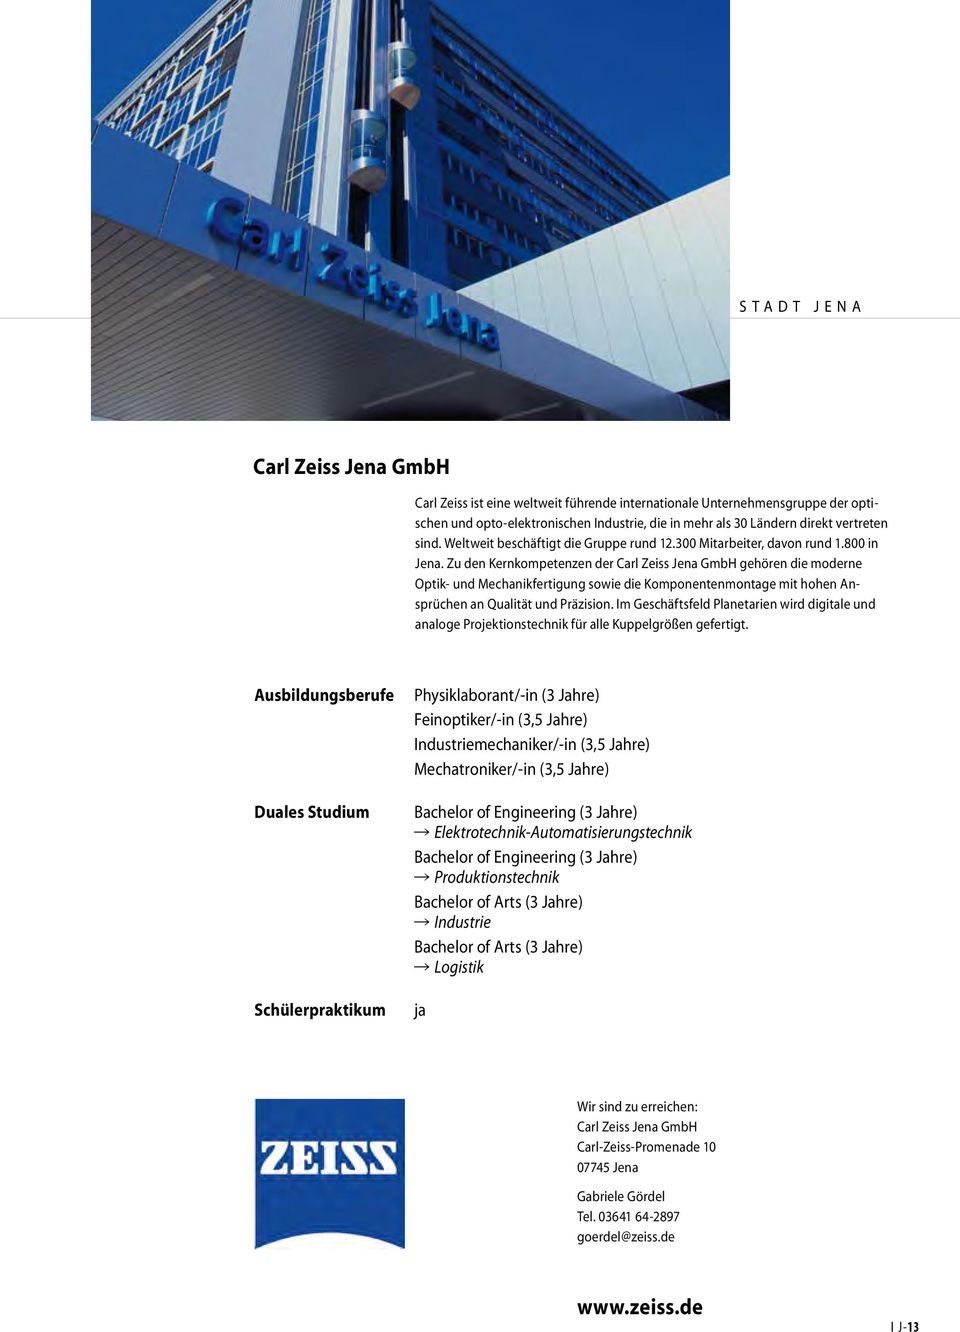 Zu den Kernkompetenzen der Carl Zeiss Jena GmbH gehören die moderne Optik- und Mechanikfertigung sowie die Komponentenmontage mit hohen Ansprüchen an Qualität und Präzision.